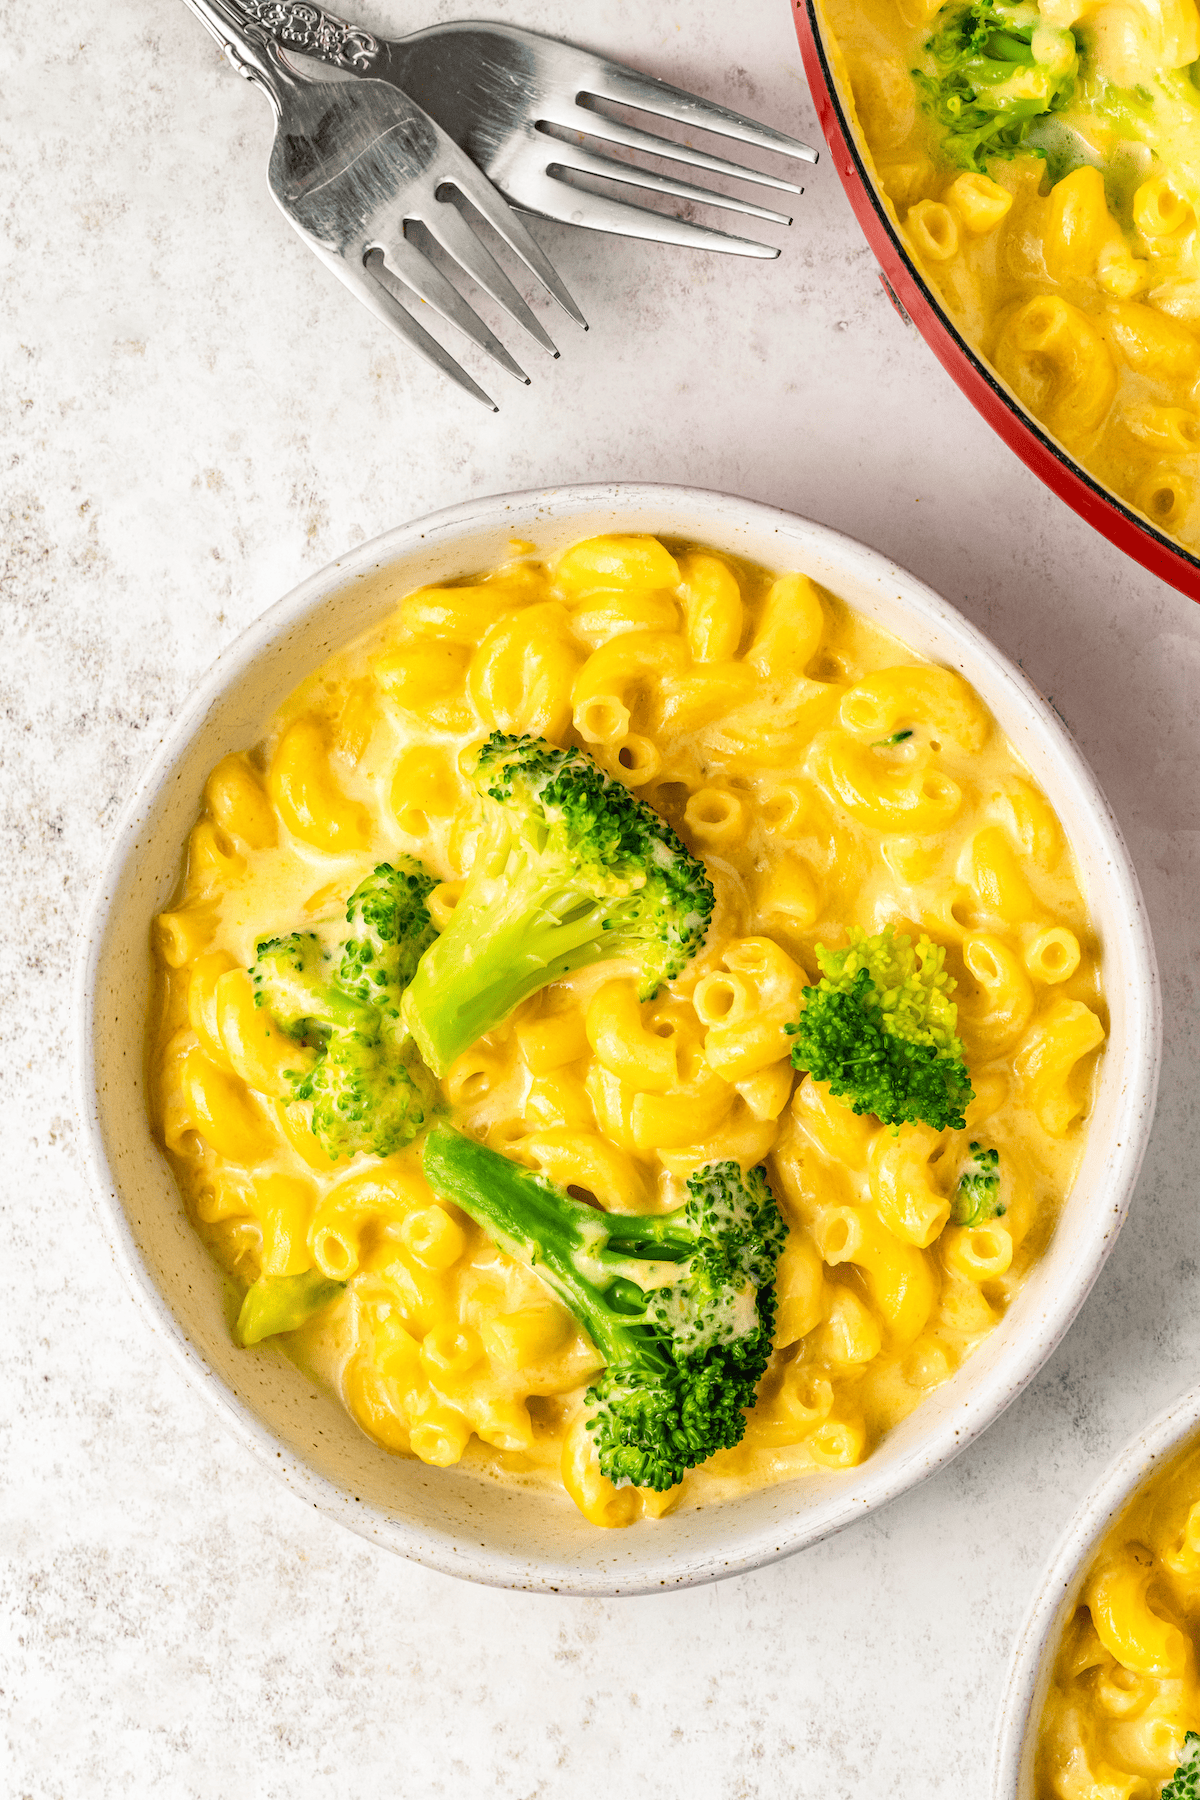 Bowl of broccoli macaroni and cheese.